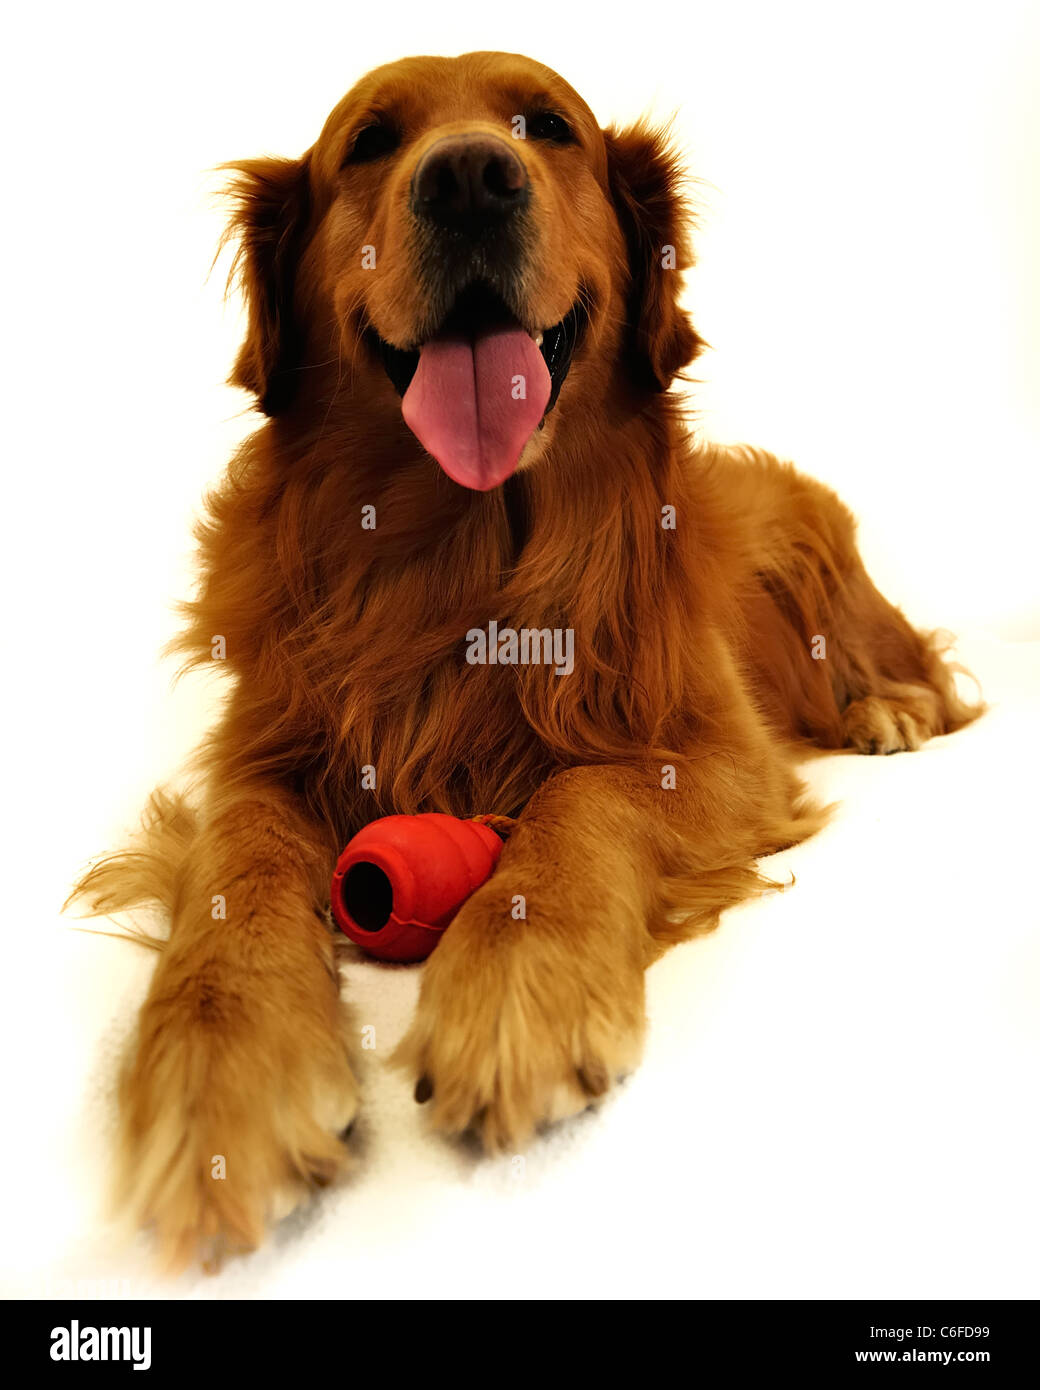 Golden retriever dog visage très expressif. Couchant avec jouet rouge, vue de face. Banque D'Images